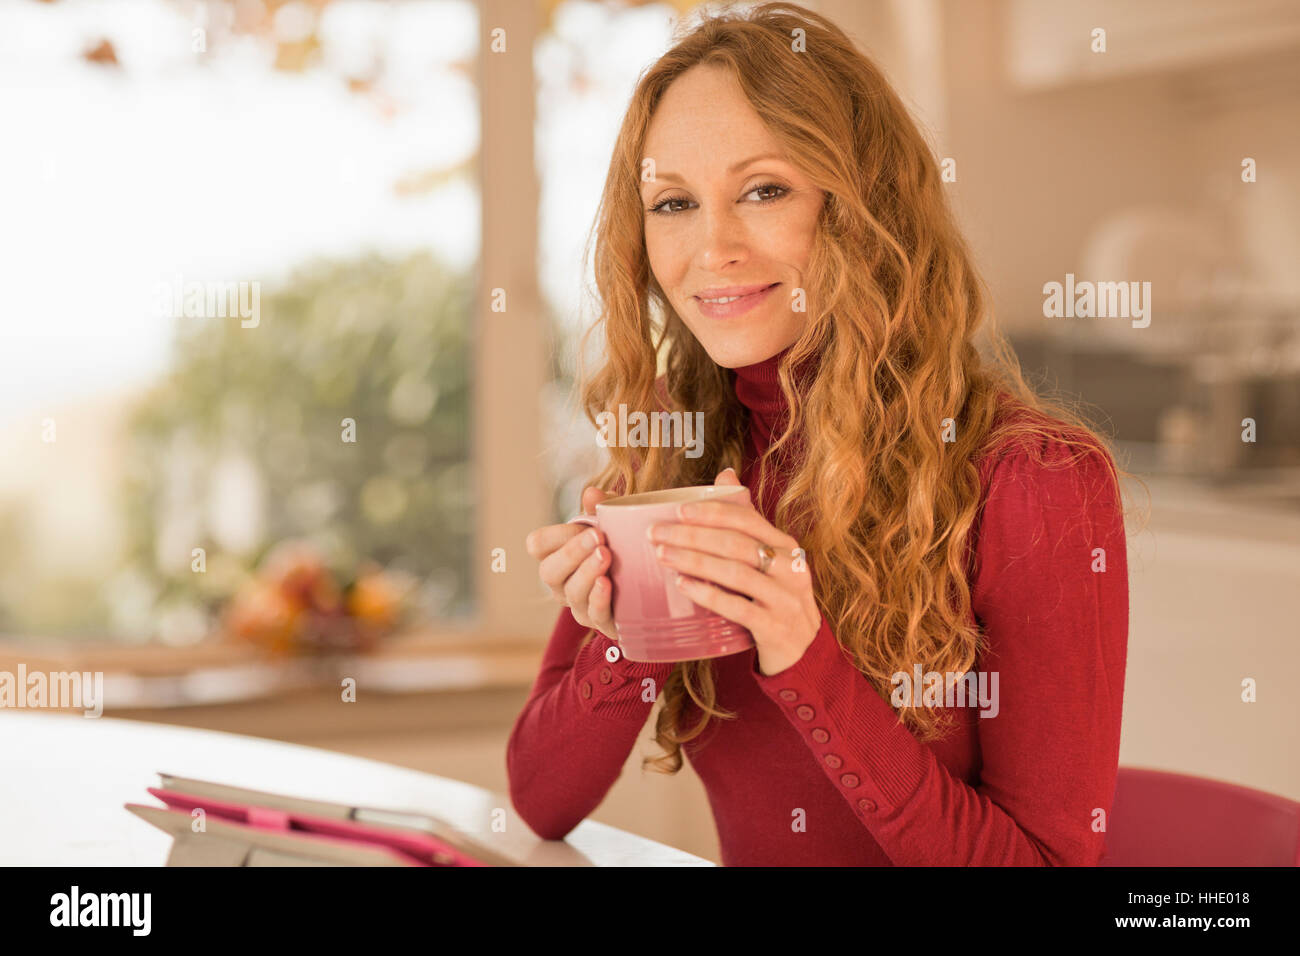 Ritratto di donna sorridente a bere caffè e con tavoletta digitale in cucina Foto Stock